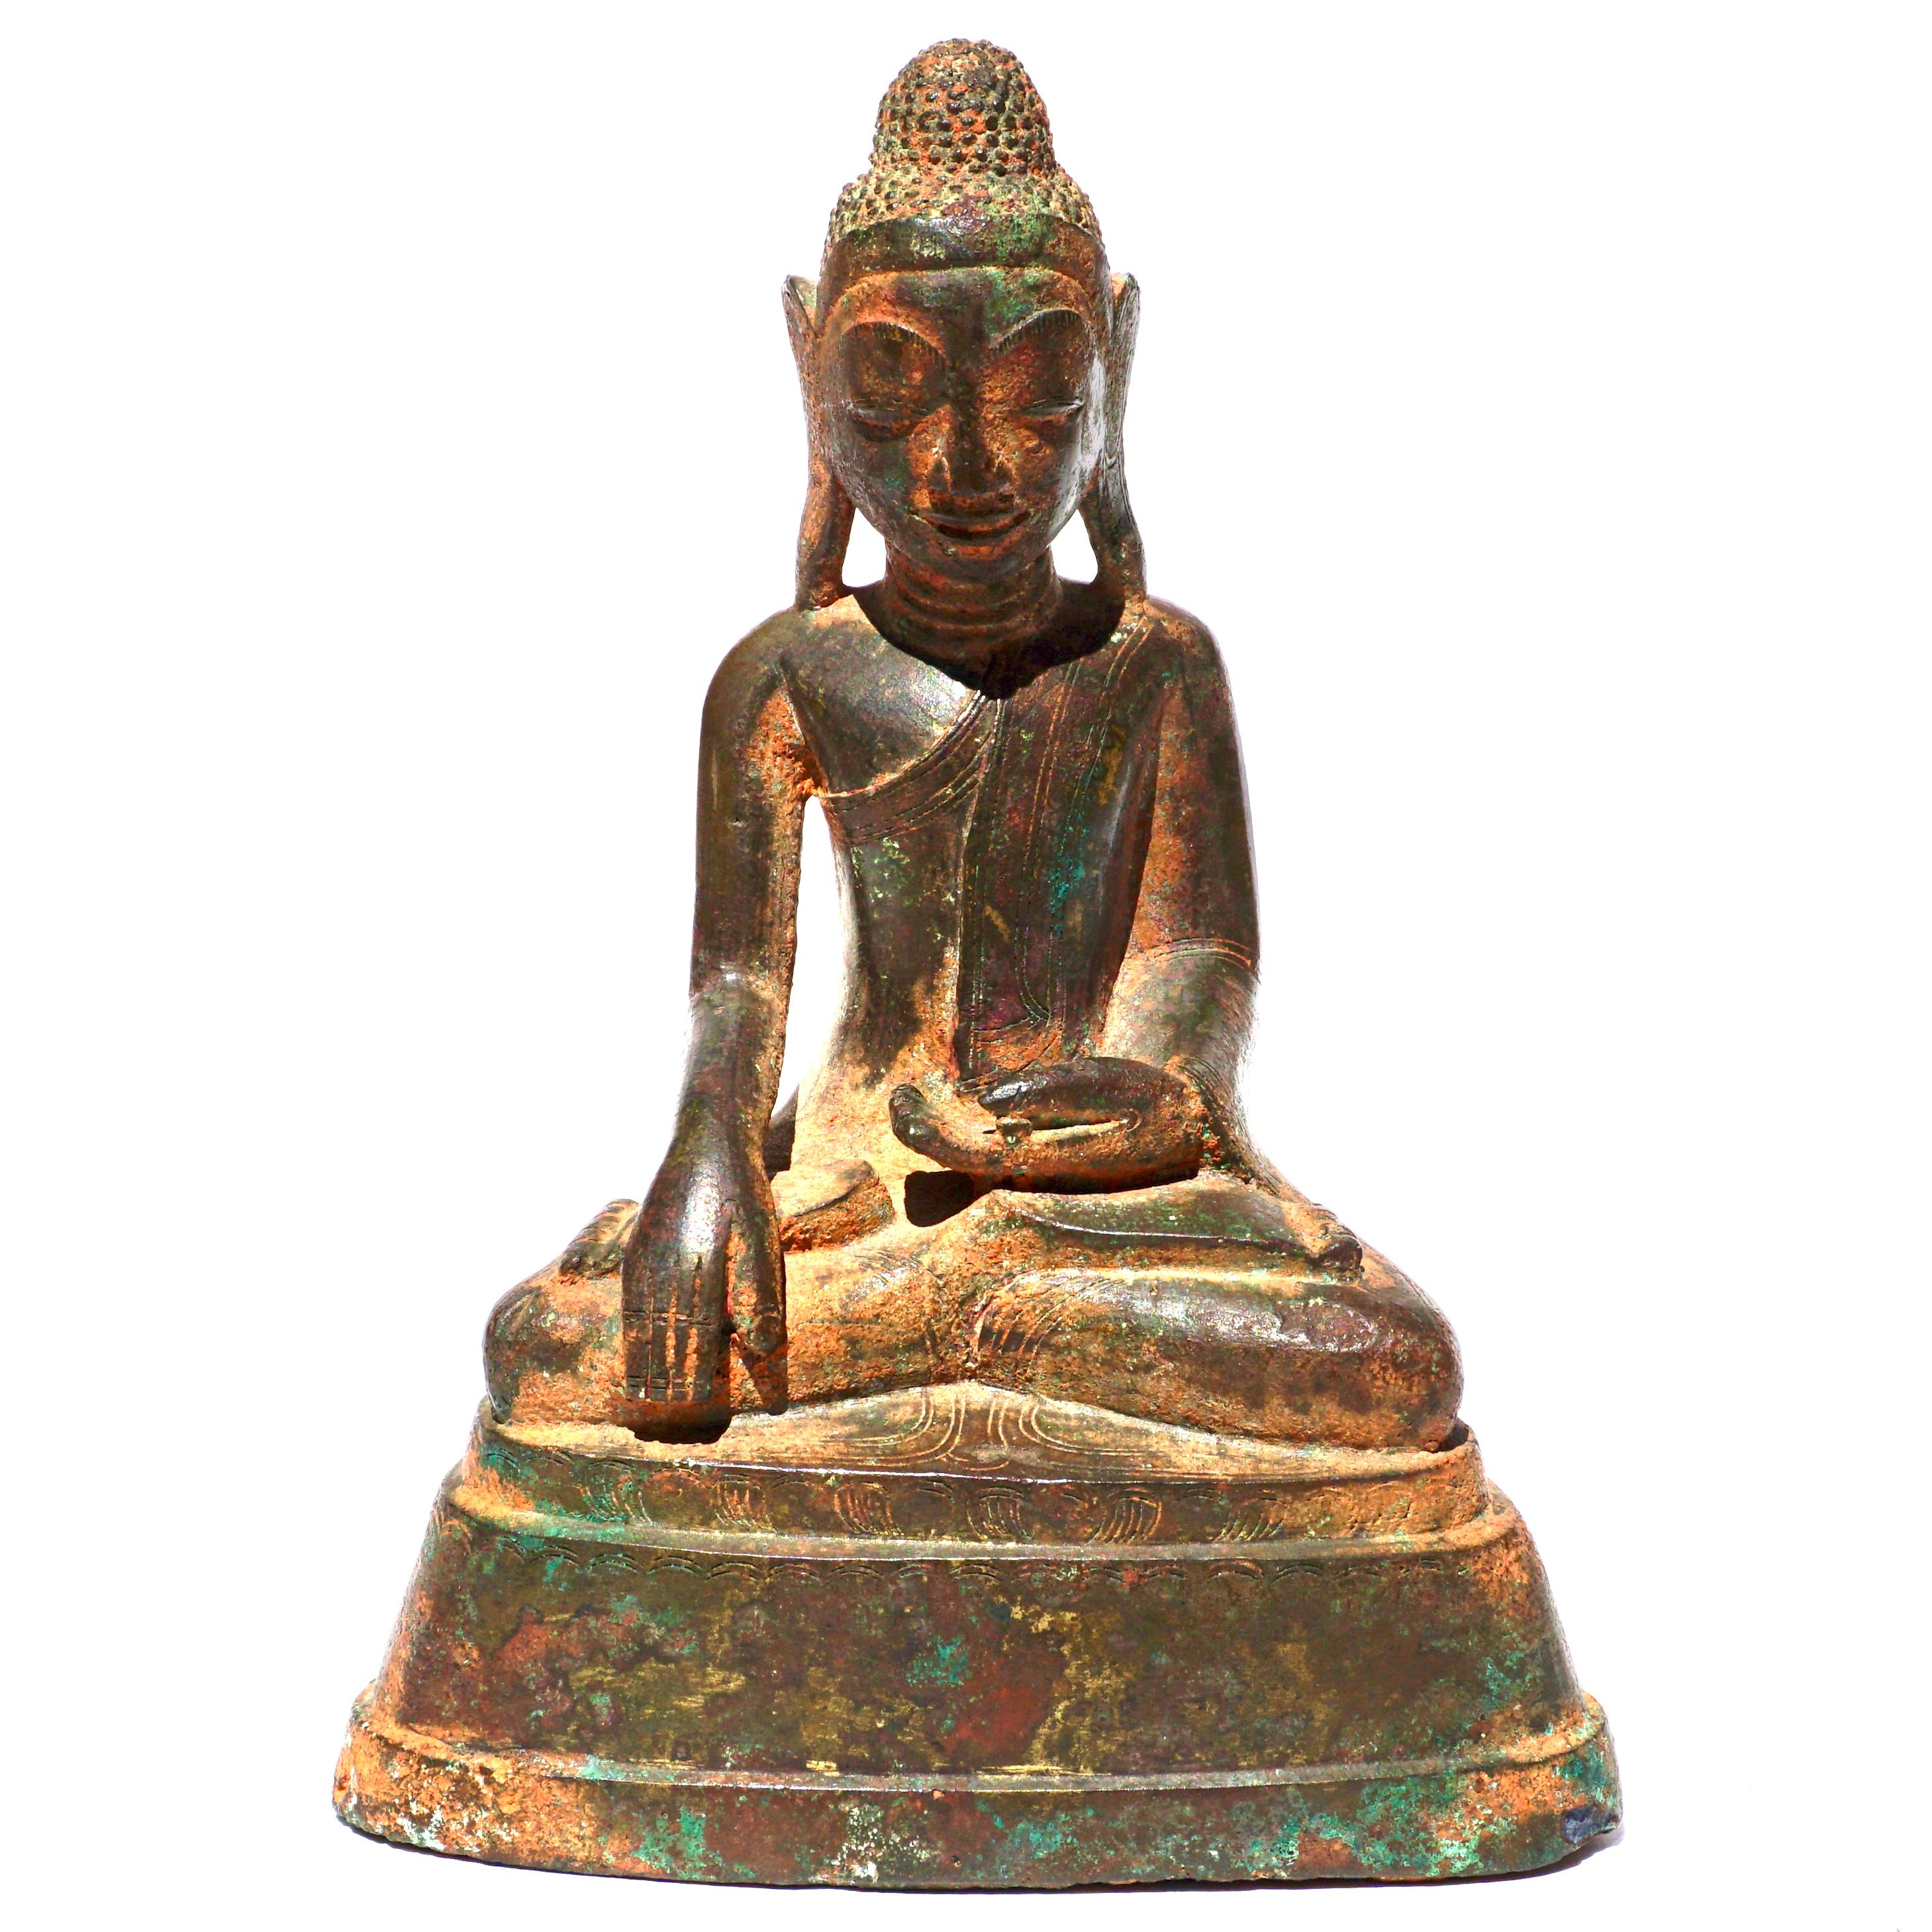 Khmer-Bronze-Buddha
Kambodscha, 17./18. Jahrhundert 
Skulptur aus Kupfer und Bronze, die einen sitzenden Buddha darstellt, mit Spuren von Vergoldung. Verso Aufschriften; möglicherweise ein Gebet.

Abmessungen: Höhe 6 1/4 Zoll (15,8